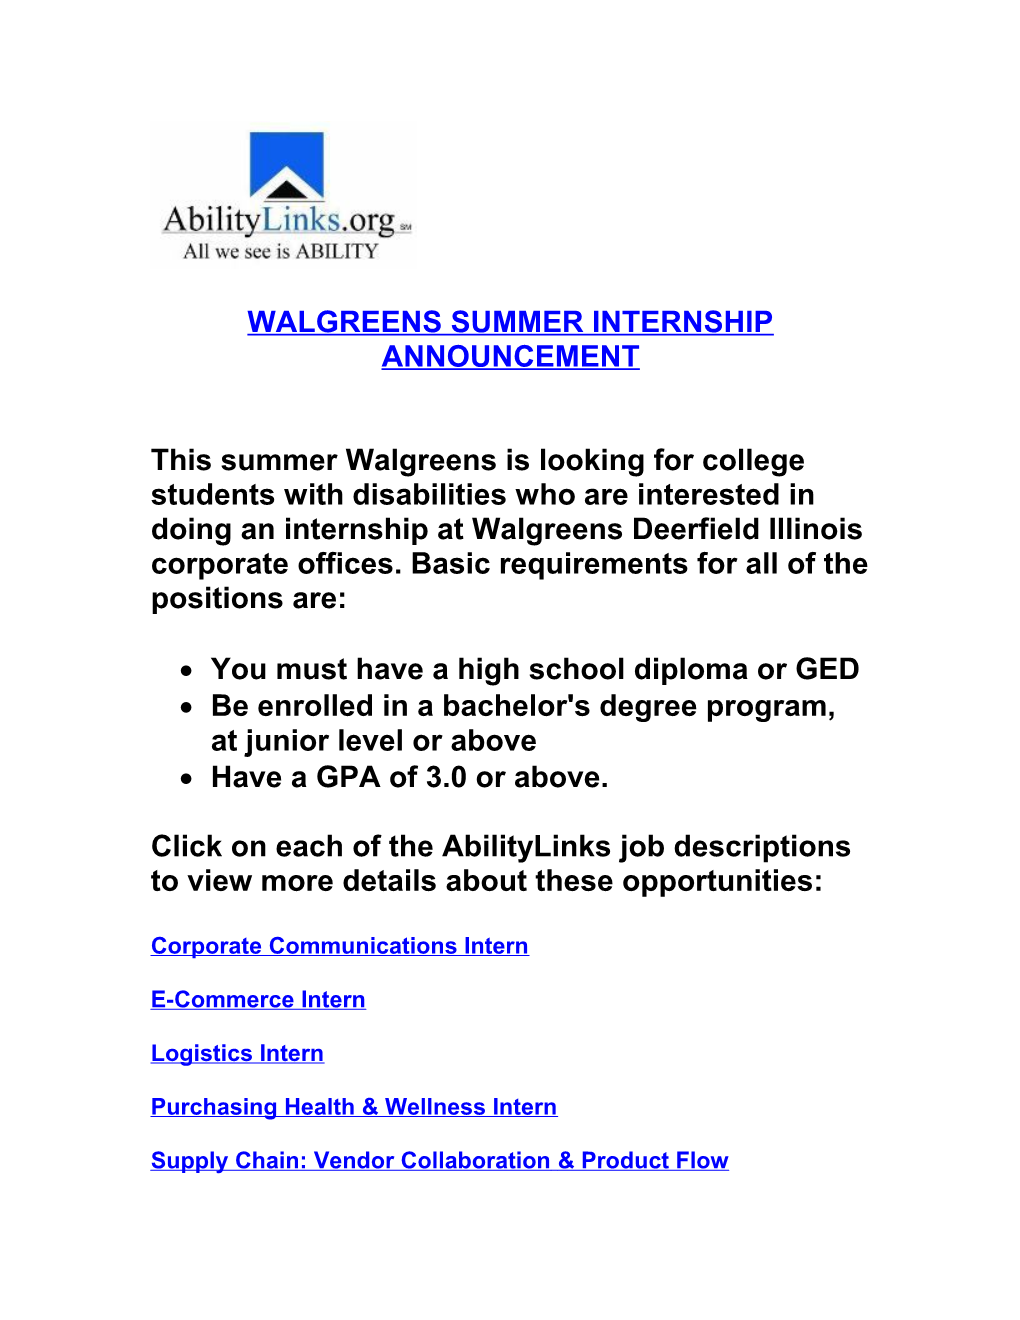 Walgreens Summer Internship Announcement